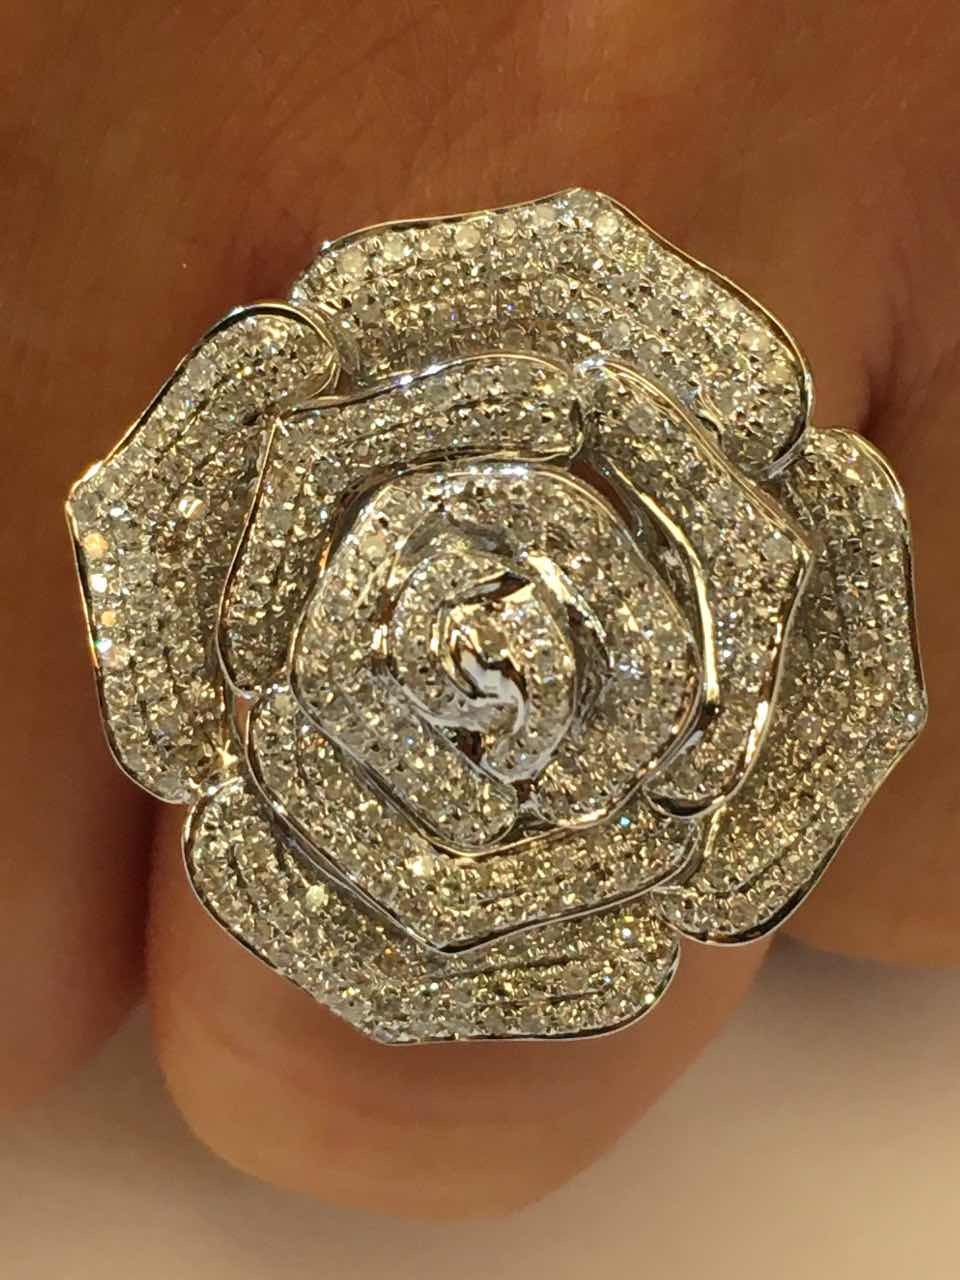 PRAIANO, anillo de oro con diamantes y rosa.